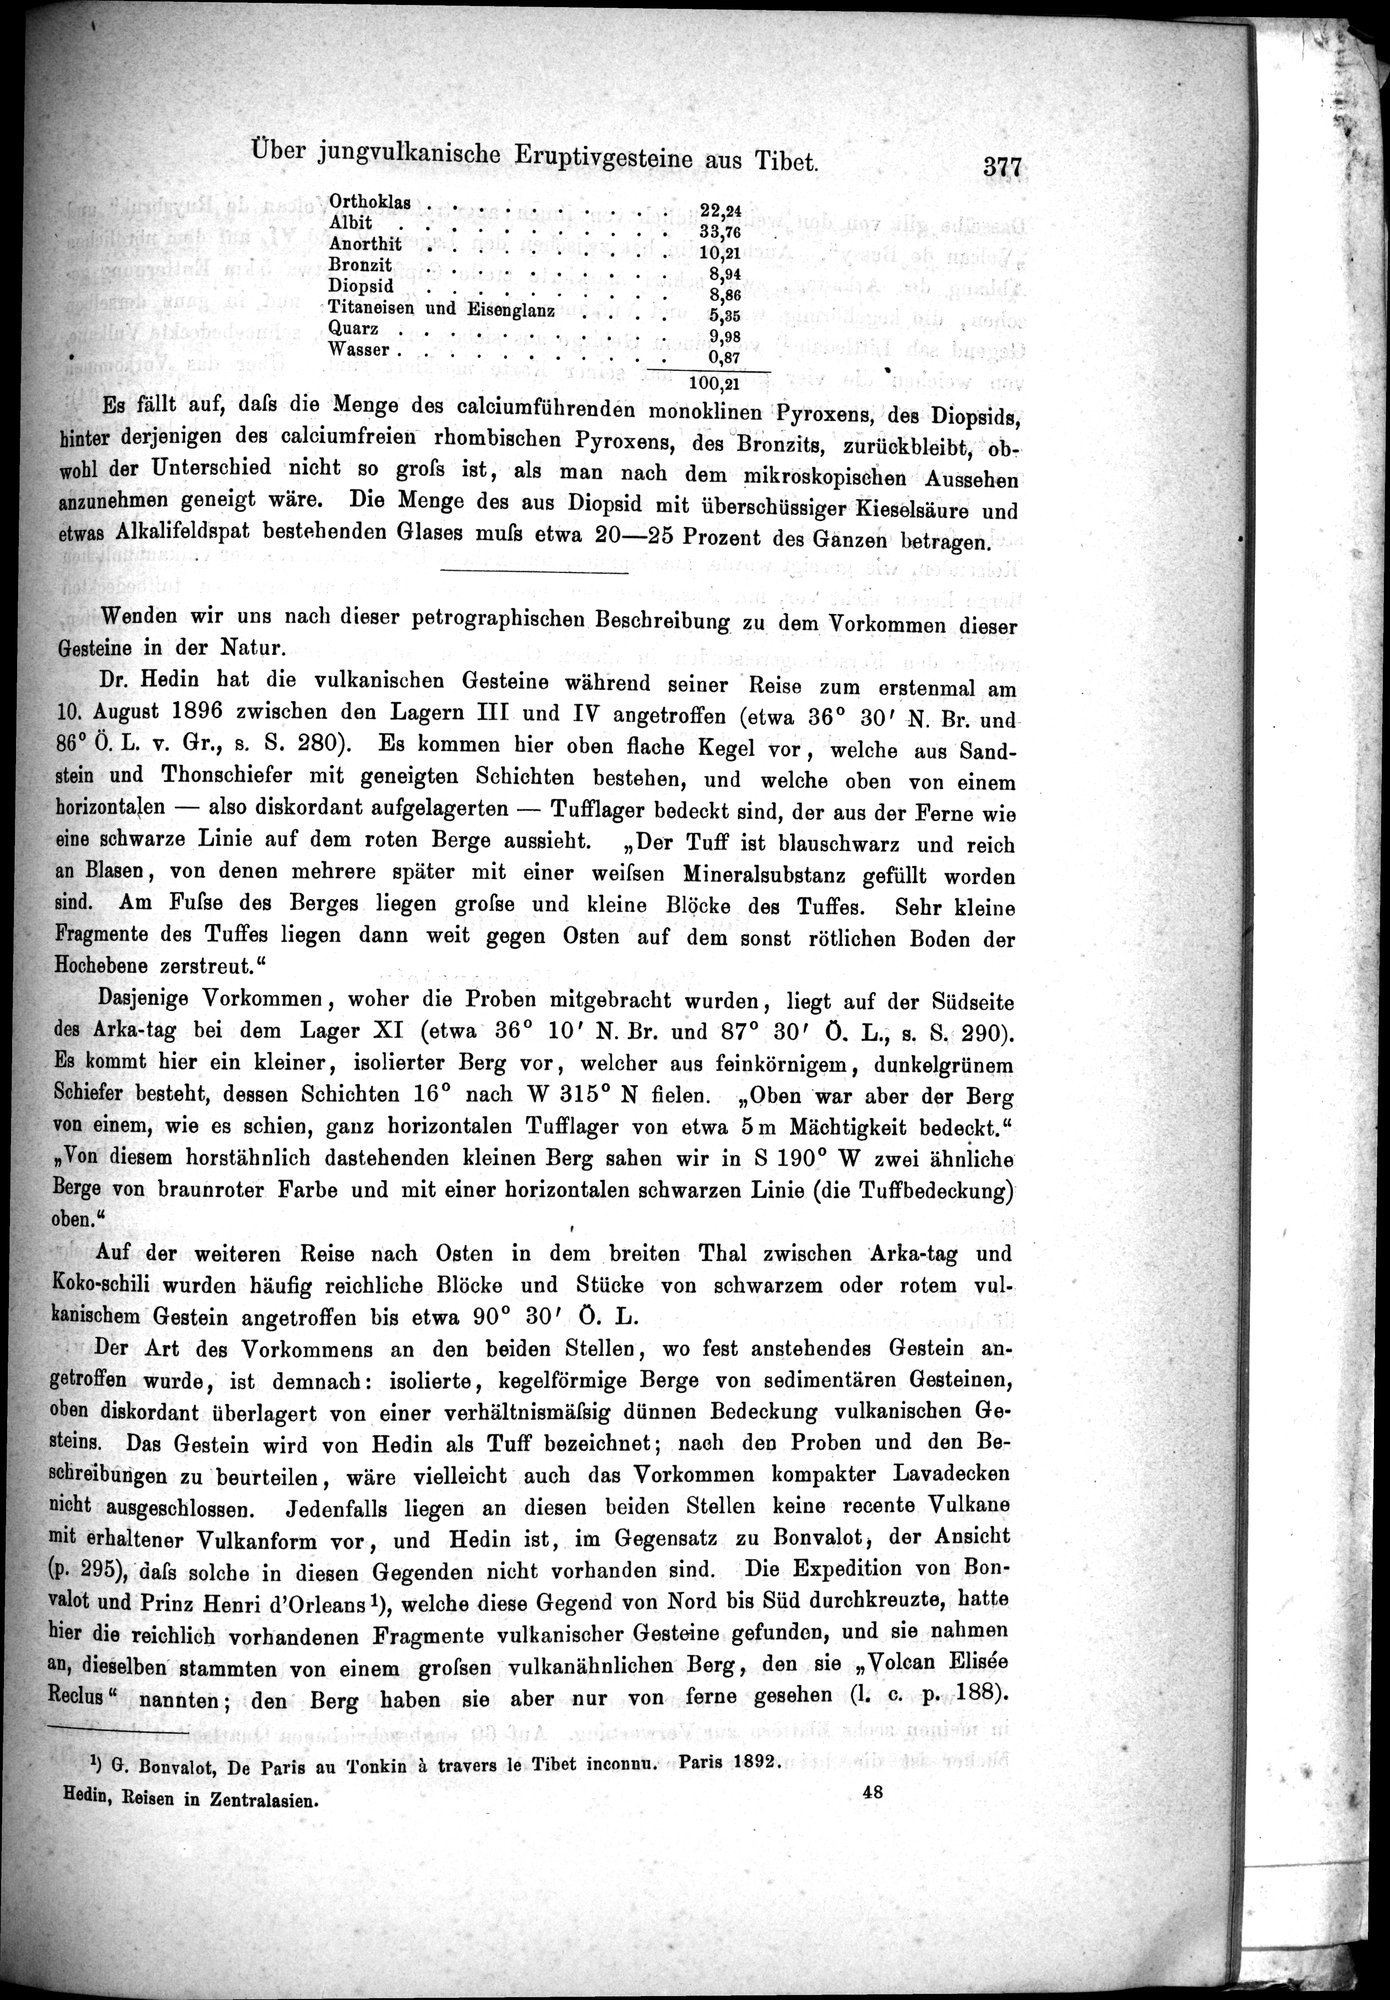 Die Geographische-Wissenschaftlichen Ergebnisse meiner Reisen in Zentralasien, 1894-1897 : vol.1 / Page 389 (Grayscale High Resolution Image)